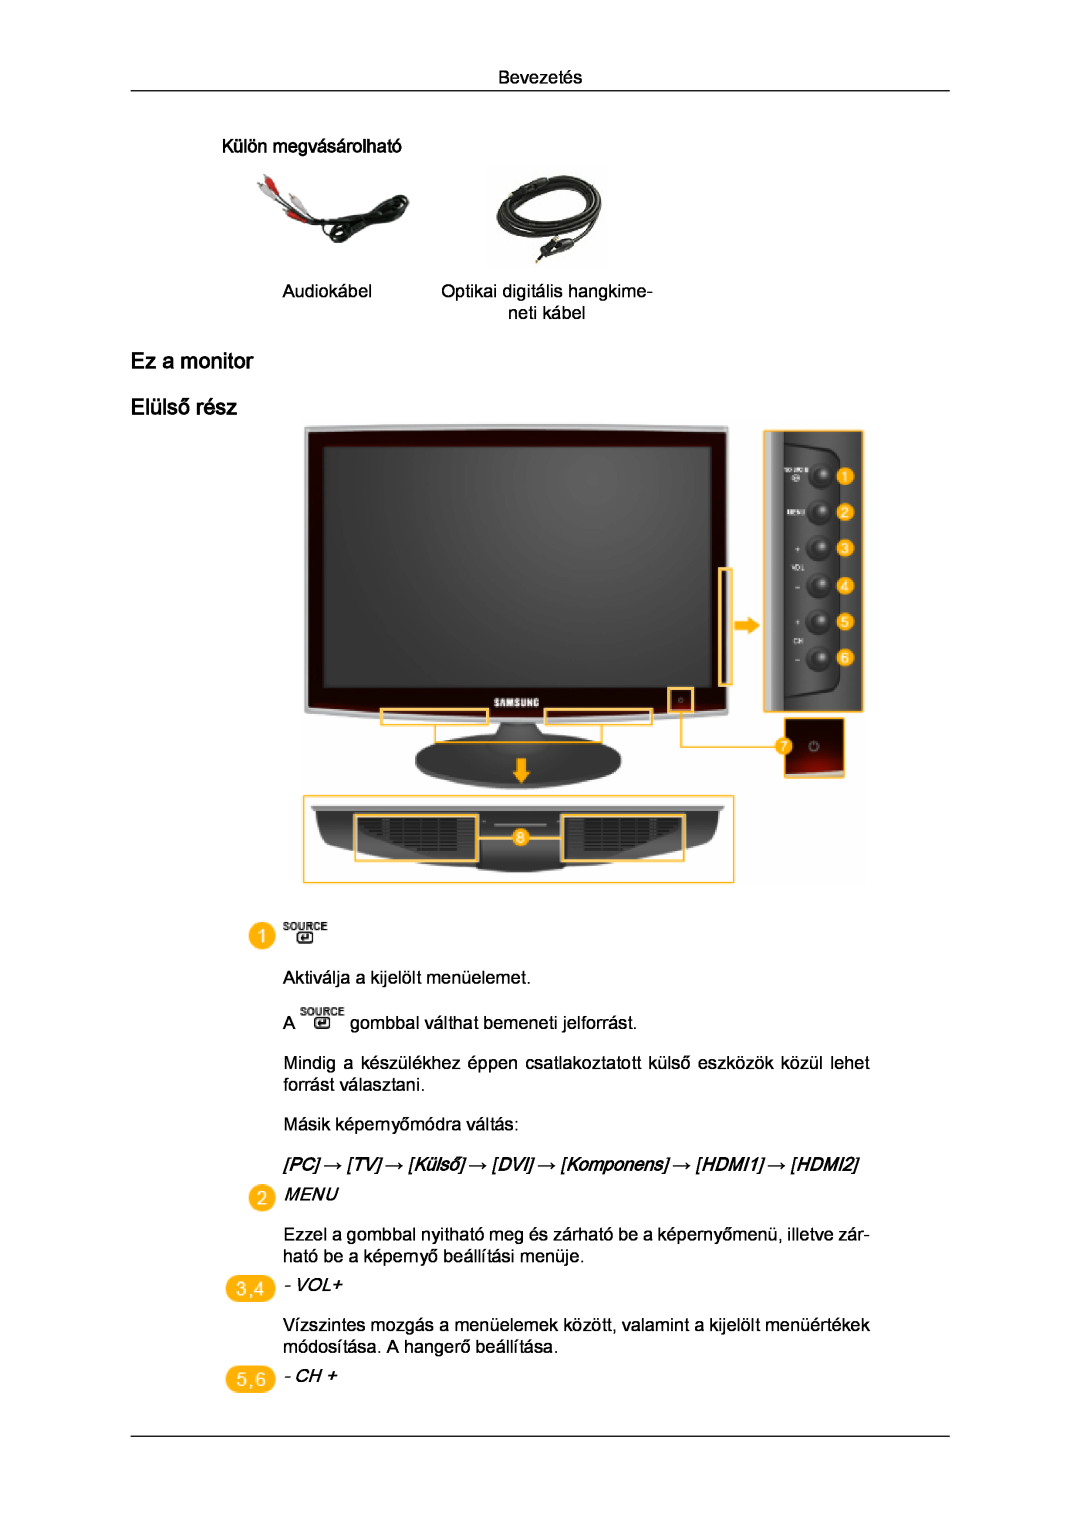 Samsung LS20TDDSUV/EN, LS20TDVSUV/EN, LS24TDVSUV/EN manual Ez a monitor Elülső rész, Menu, Vol+, Ch +, Külön megvásárolható 